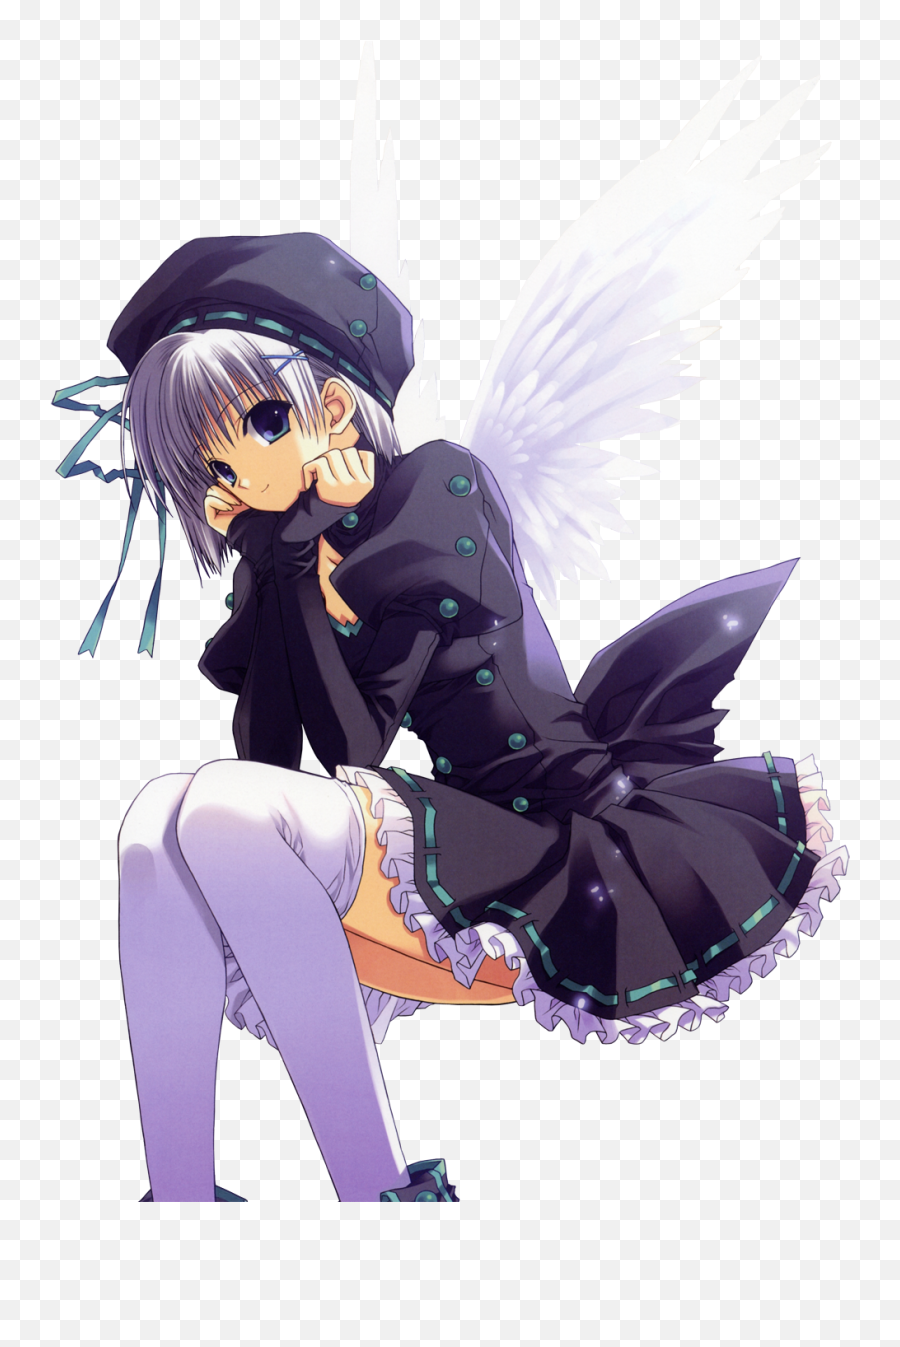 Angel Anime Girl Transparent Background - Imagenes De Muñecas Pensando Emoji,Anime Girl Transparent Background